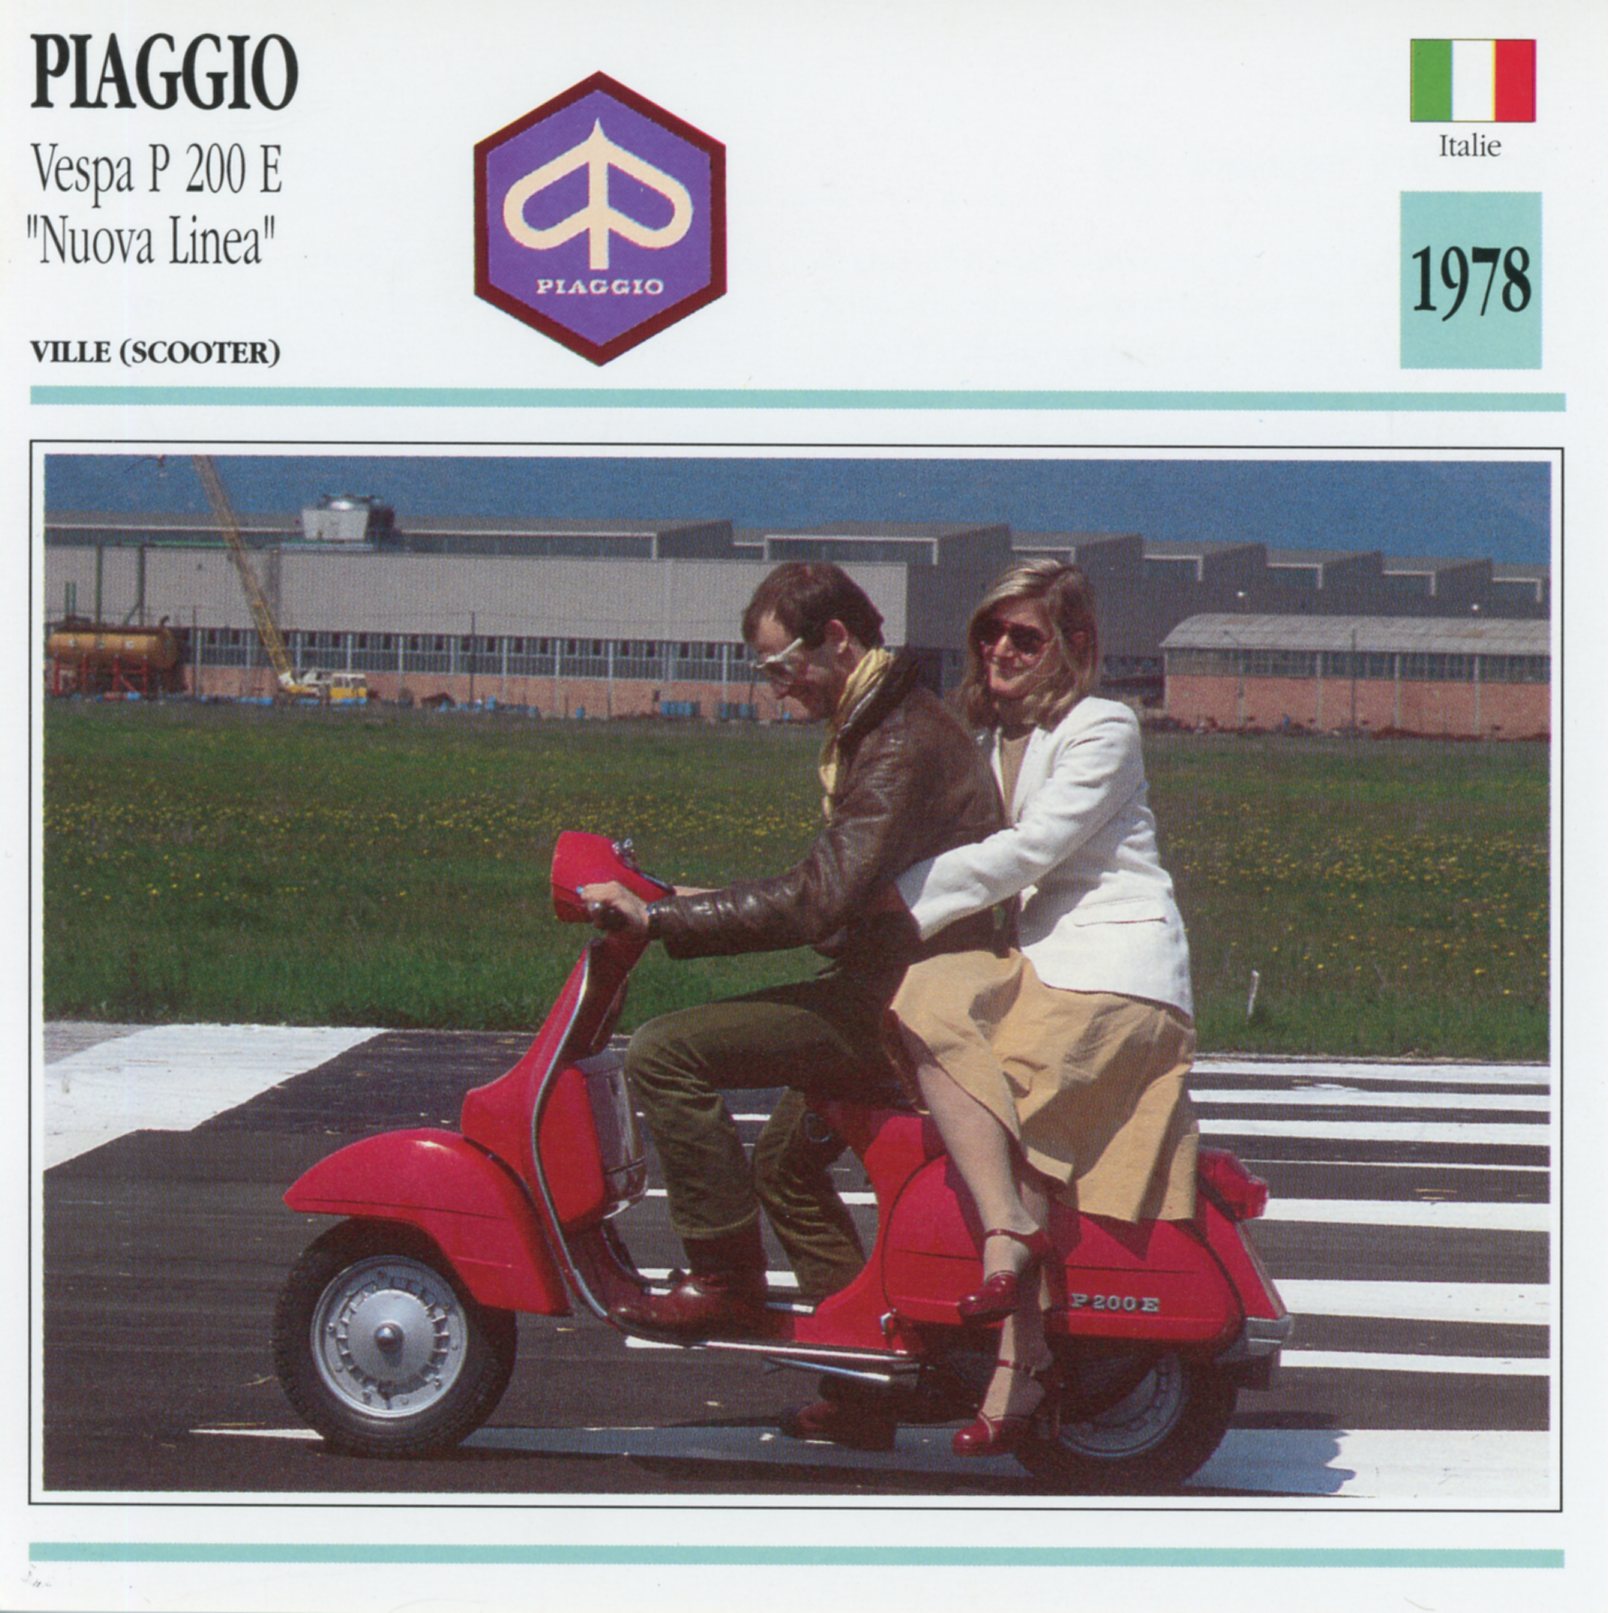 PIAGGIO P 200 E - VESPA P200E NUOVA LINEA - CARTE CARD PIAGGIO FICHE SCOOTER CARACTERISTIQUES